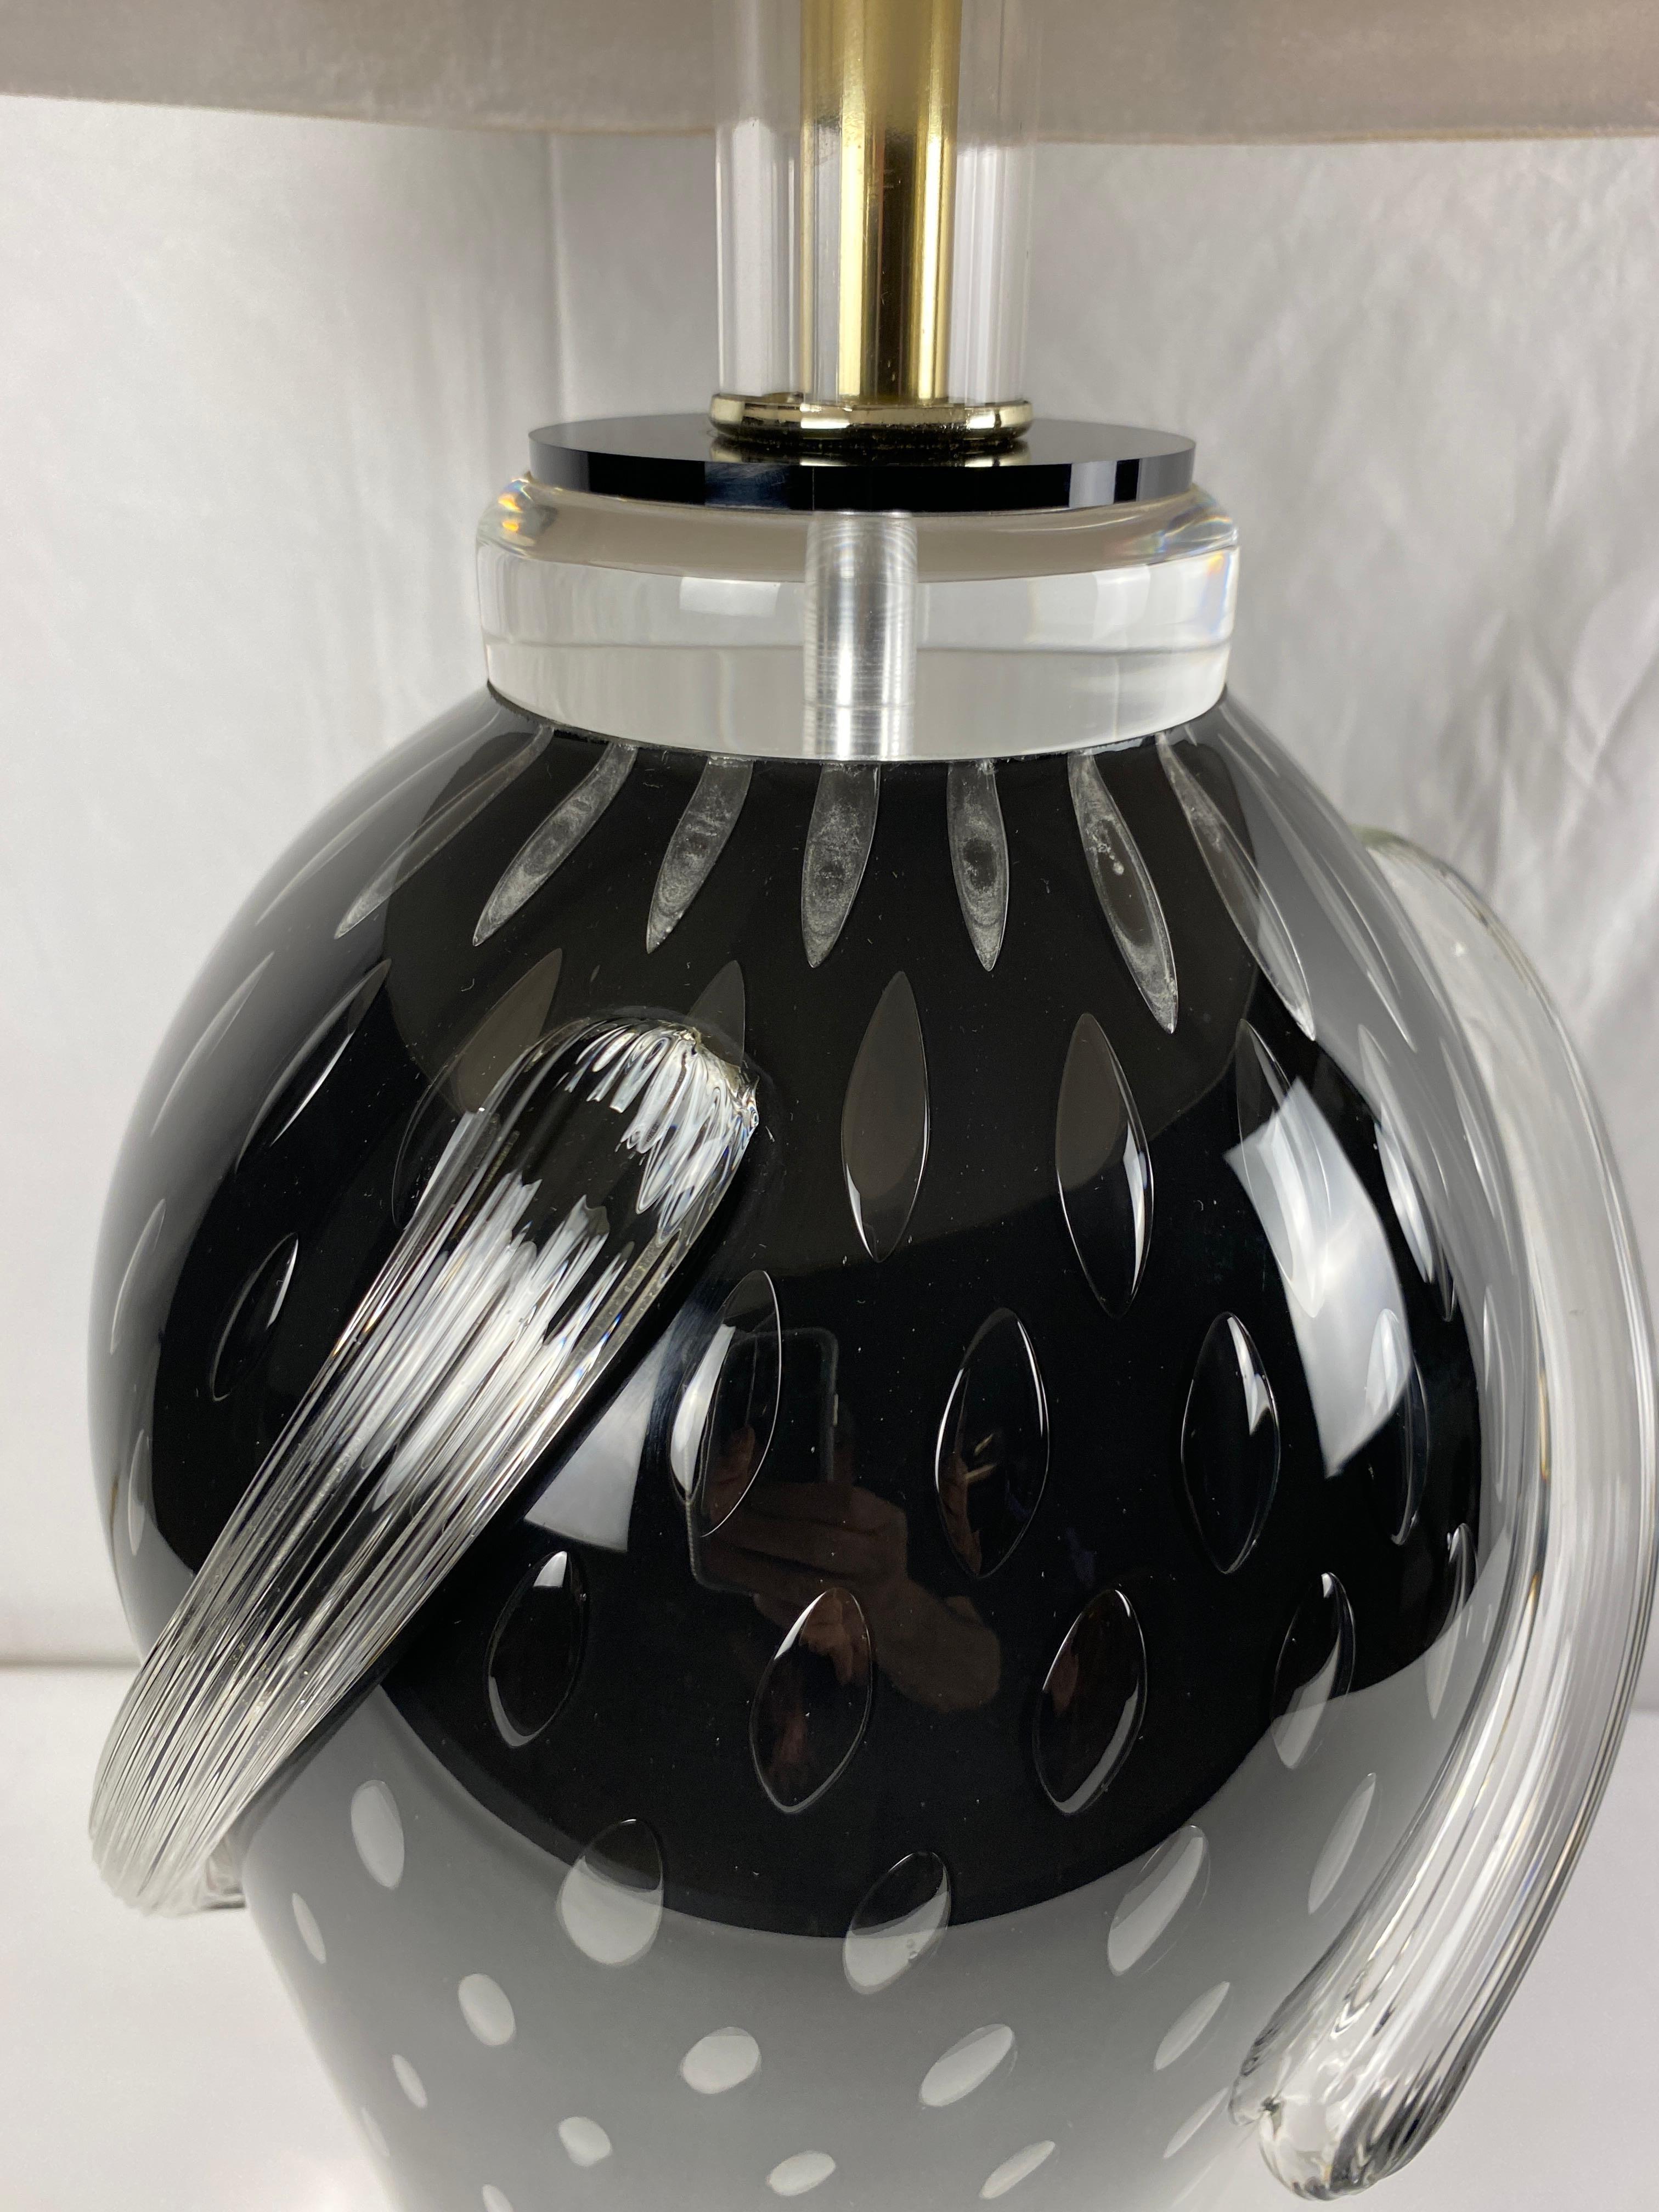 Ein außergewöhnlich schönes Gefäß aus mundgeblasenem Murano-Kunstglas in Form einer maßgefertigten Lampe. Fabelhafte Form mit einer beeindruckenden Farbpalette. Diese Leuchte wurde mit größter Sorgfalt und unter Verwendung von Komponenten höchster